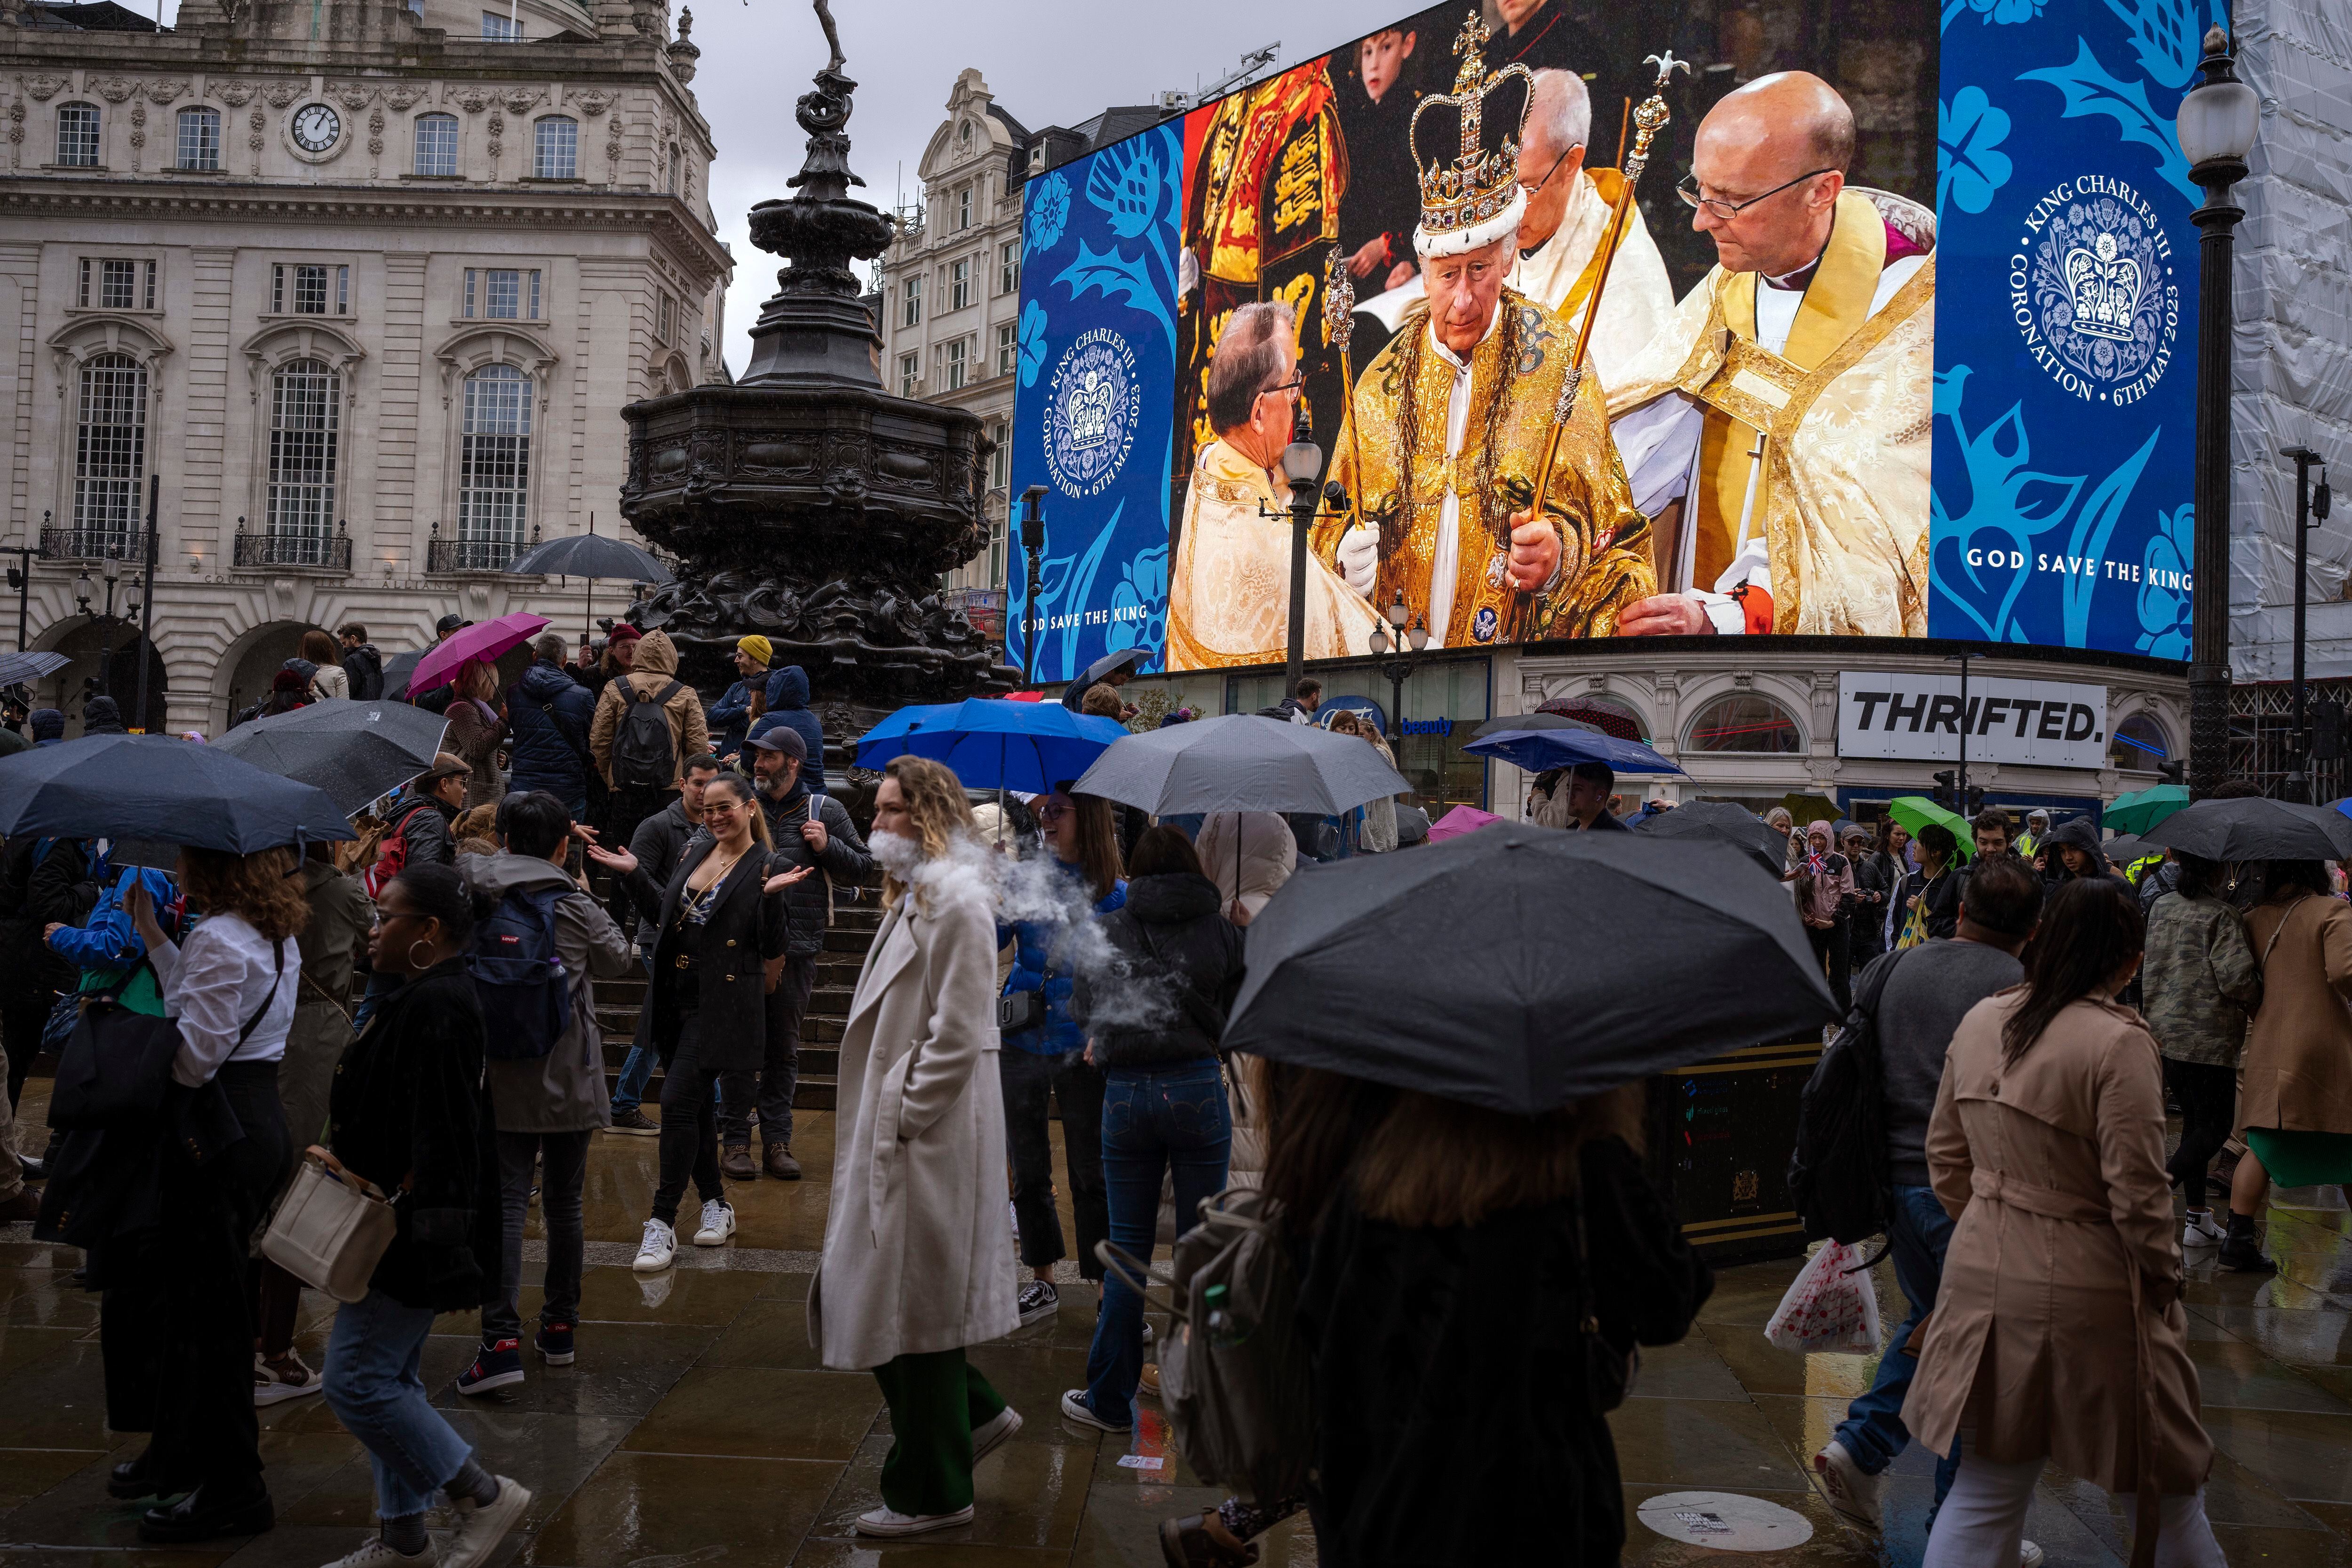 Varias personas pasaban el sábado junto a una pantalla gigante en el centro de Londres, que mostraba una imagen del rey Carlos III de Gran Bretaña durante la ceremonia de coronación en la Abadía de Westminster.